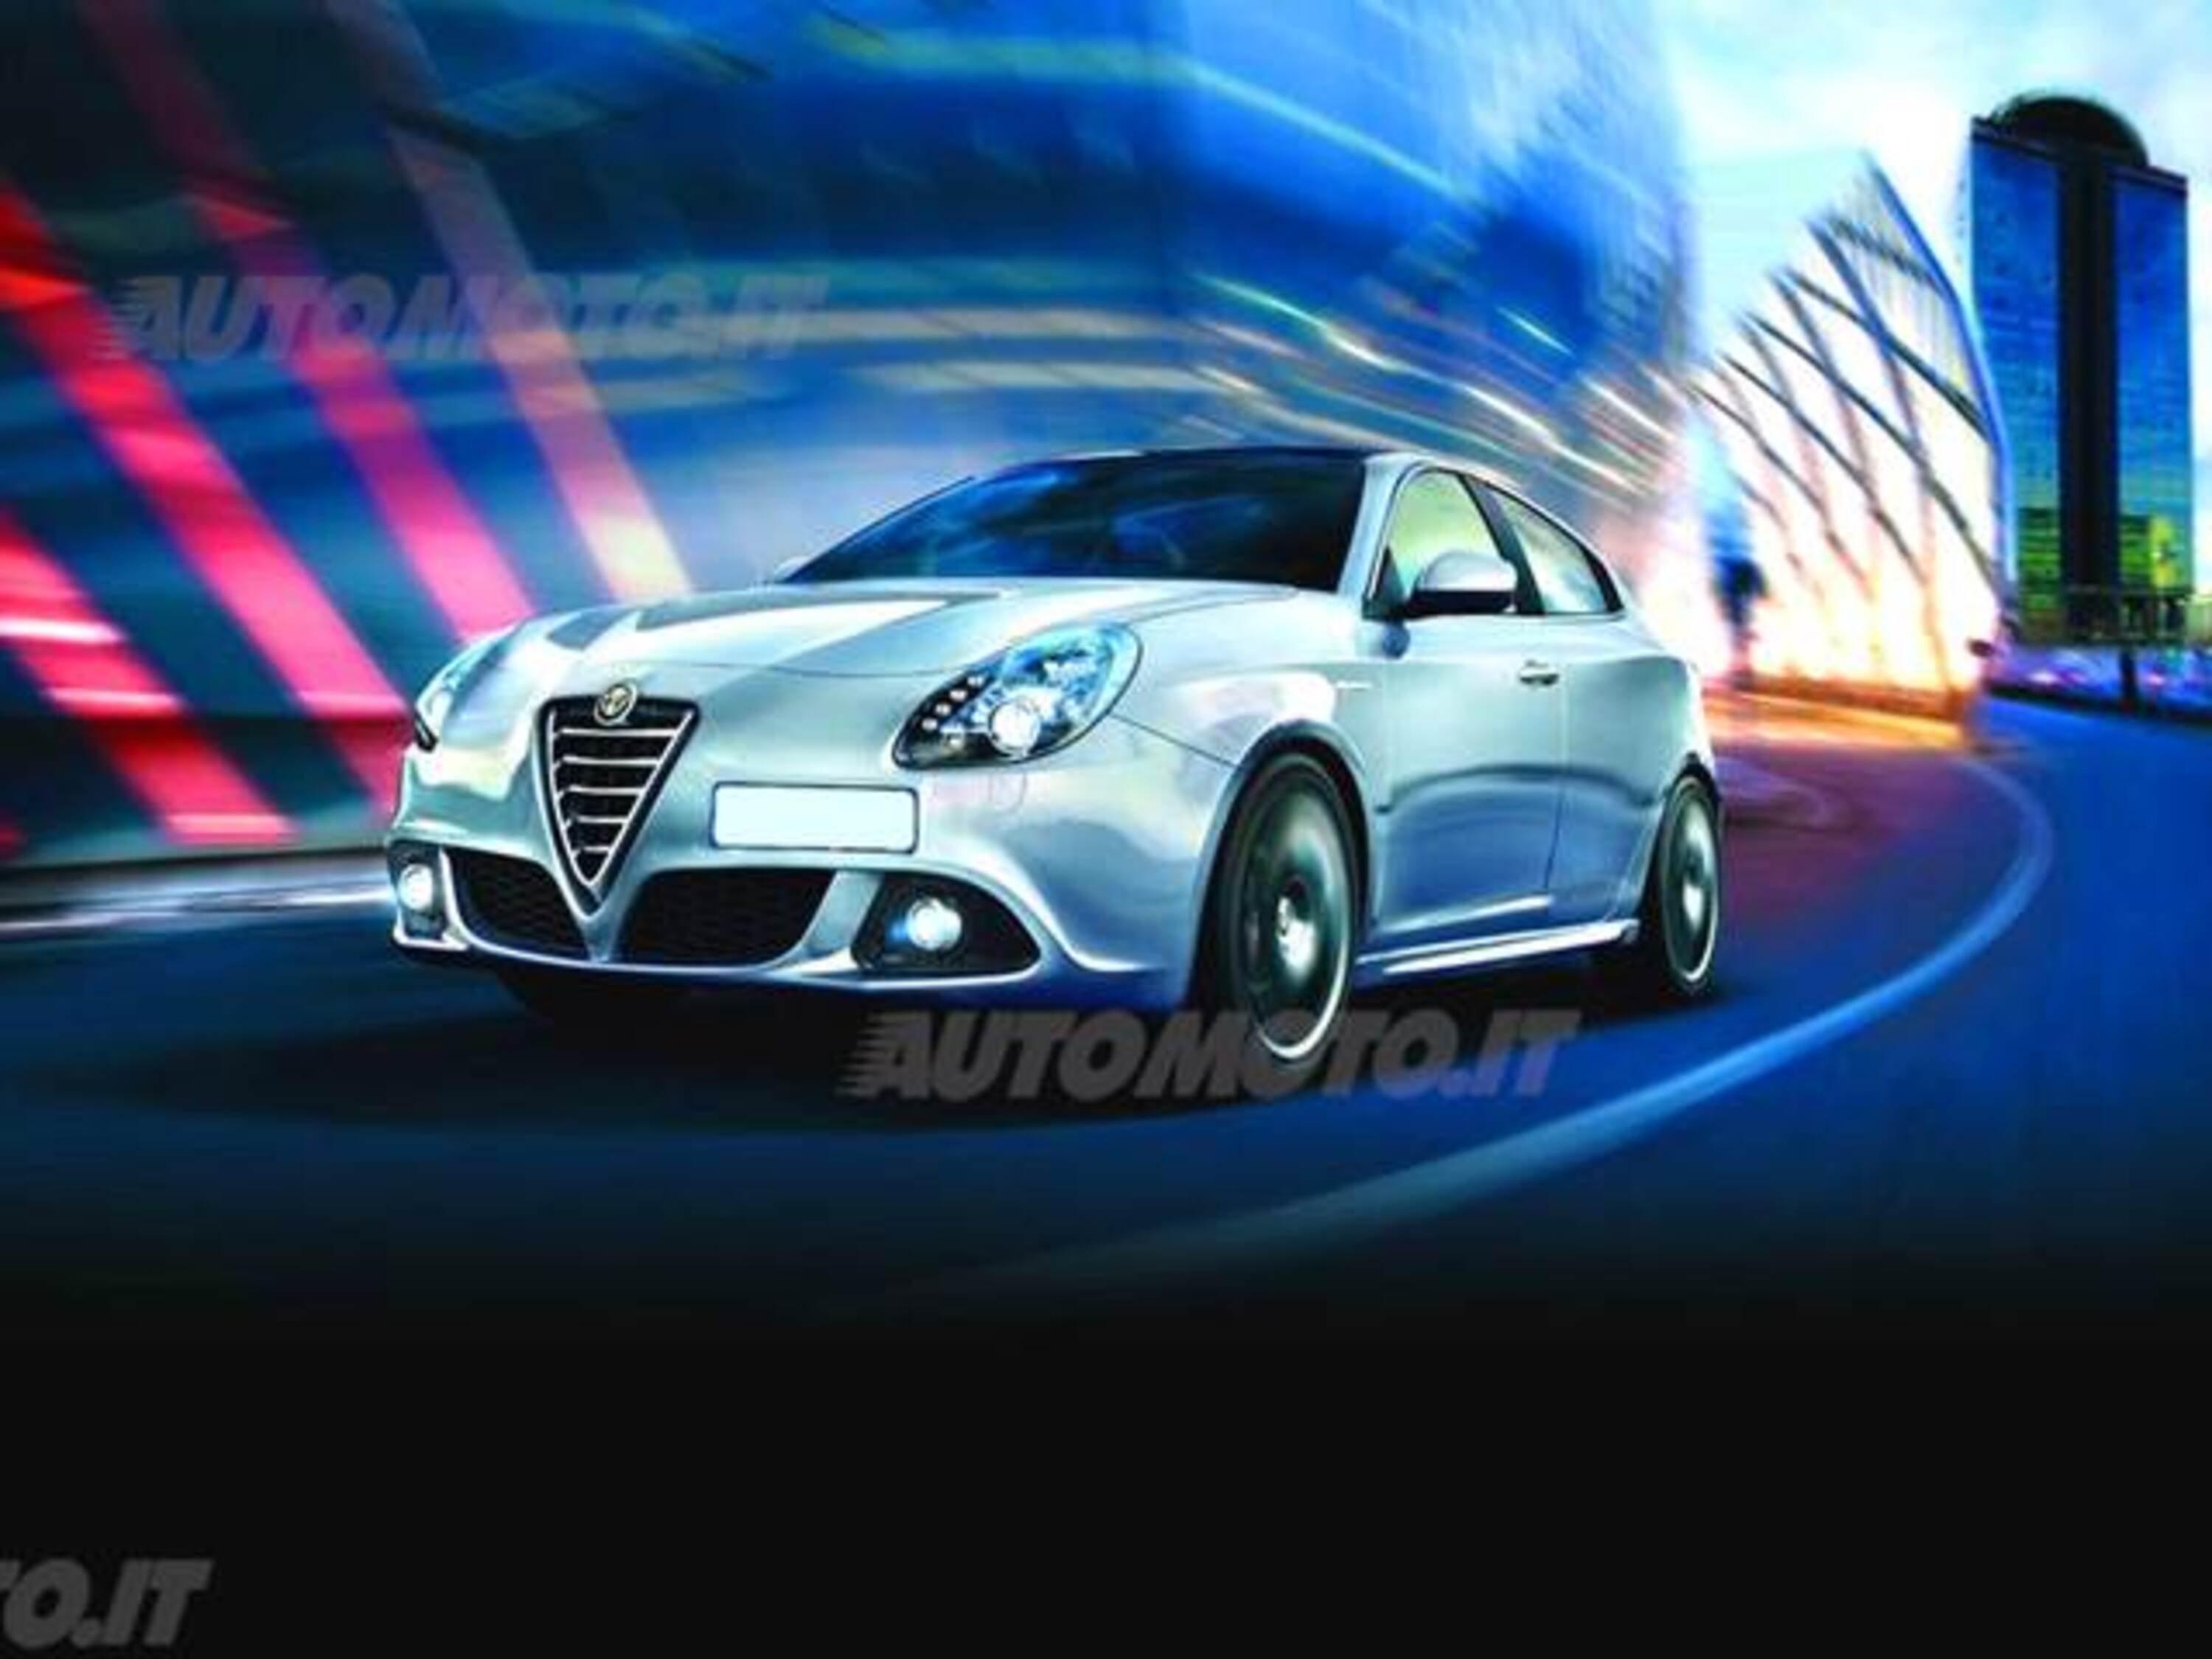 Alfa Romeo Giulietta: dimensioni, interni, motori, prezzi e